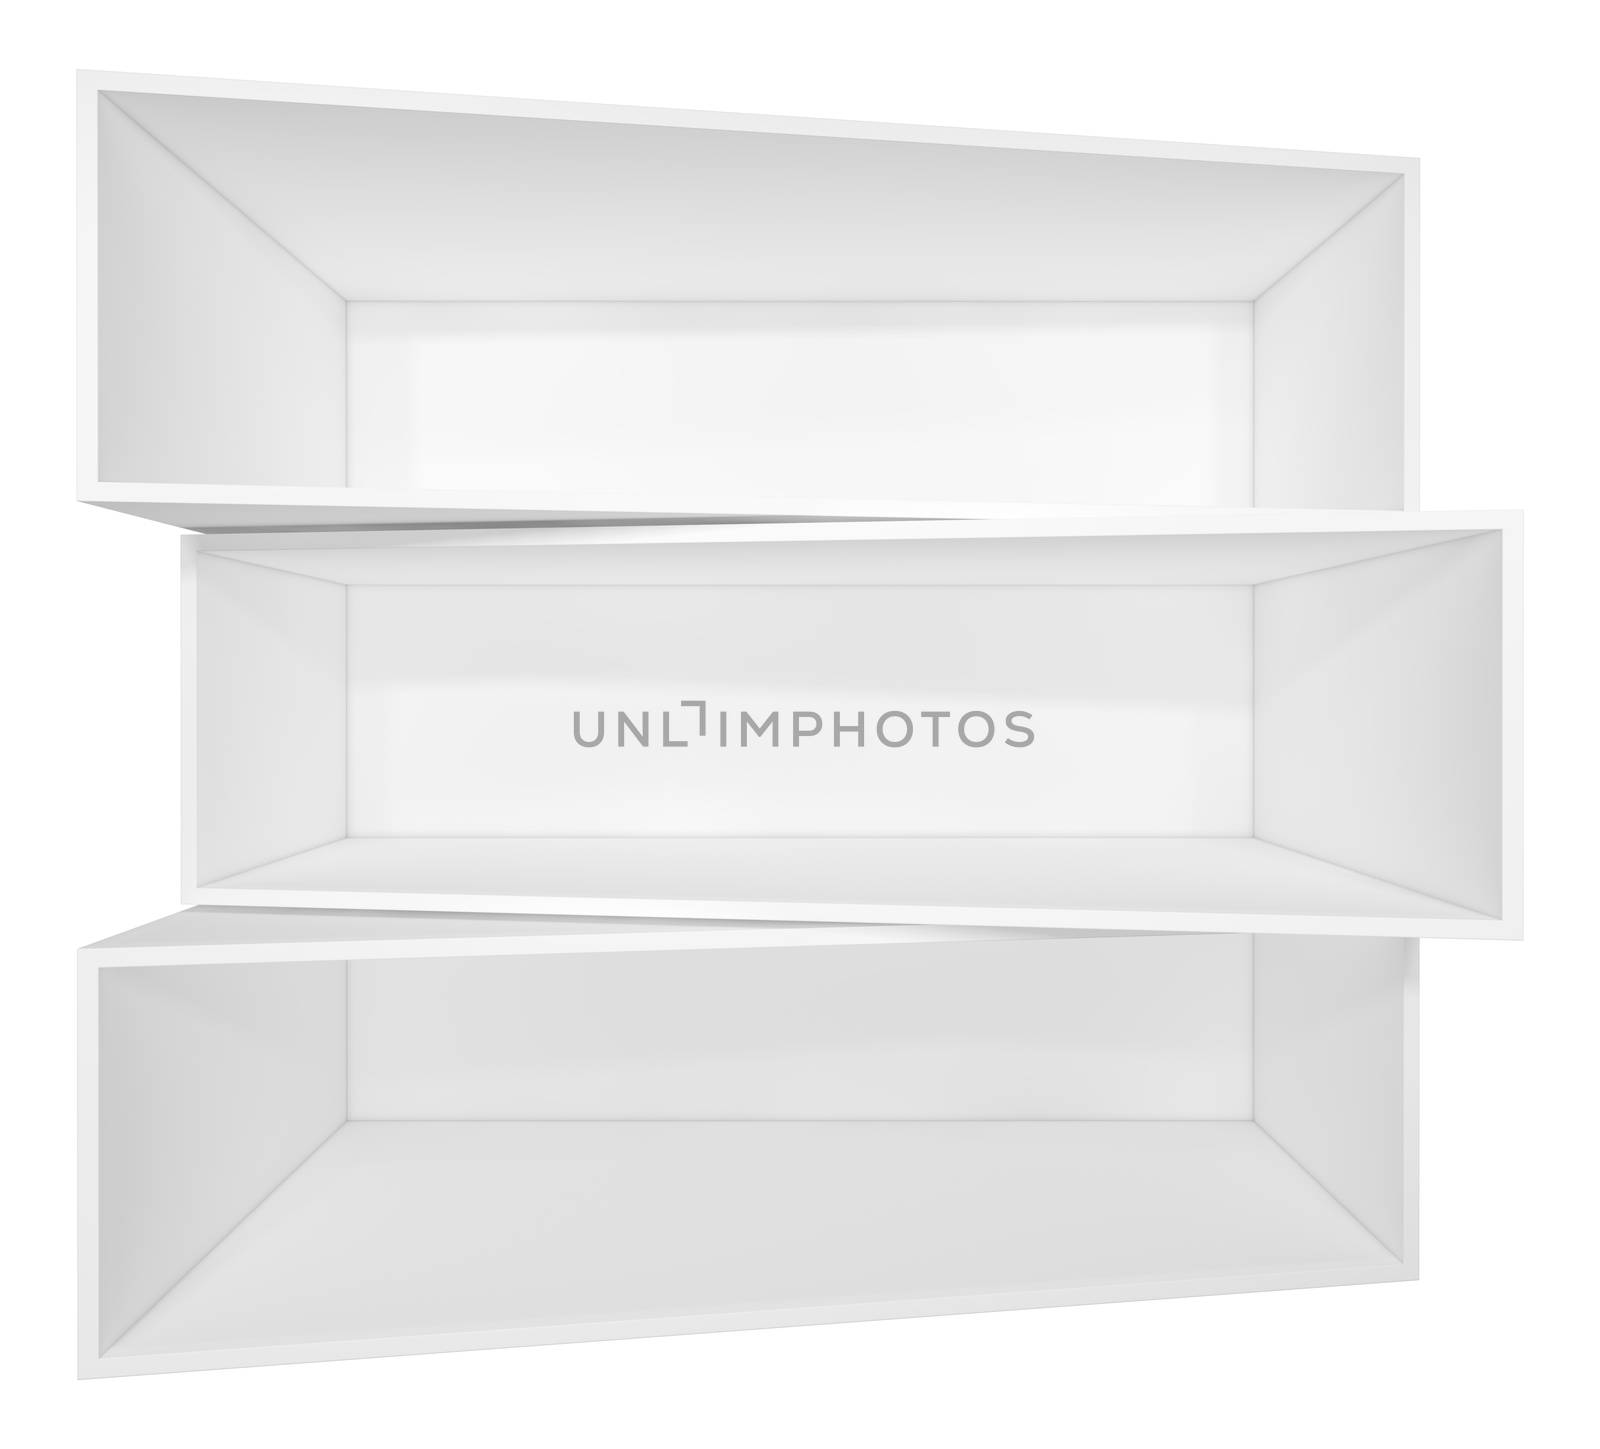 Illuminated white shelf for presentations. Isolated on white background. 3D illustration